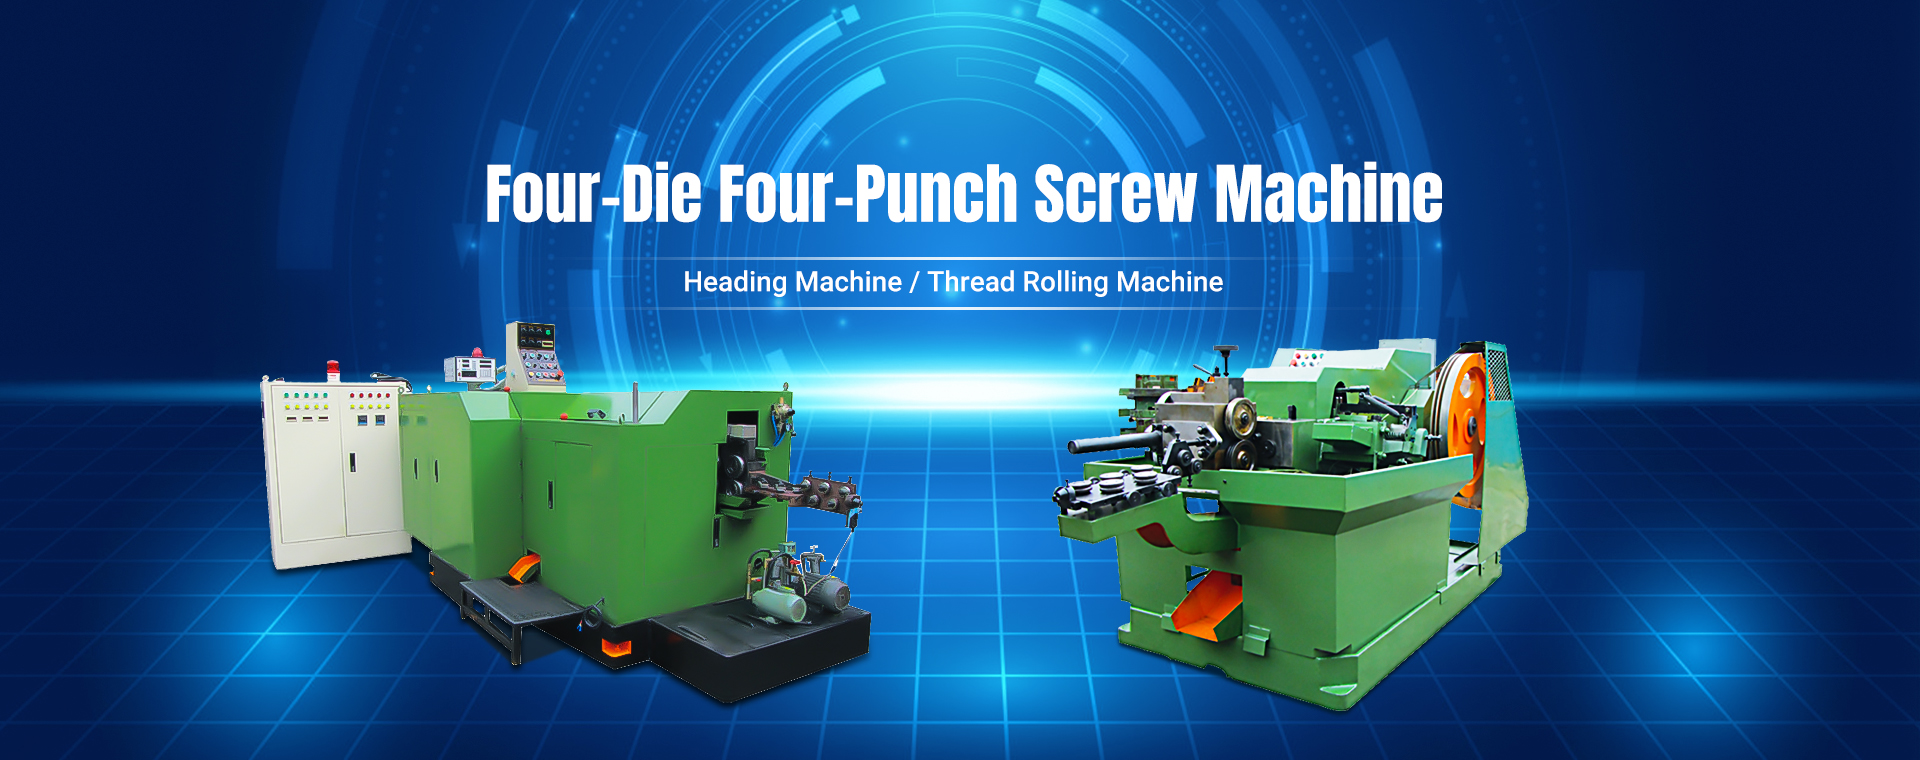 Four-Die Four-Punch Screw Machine